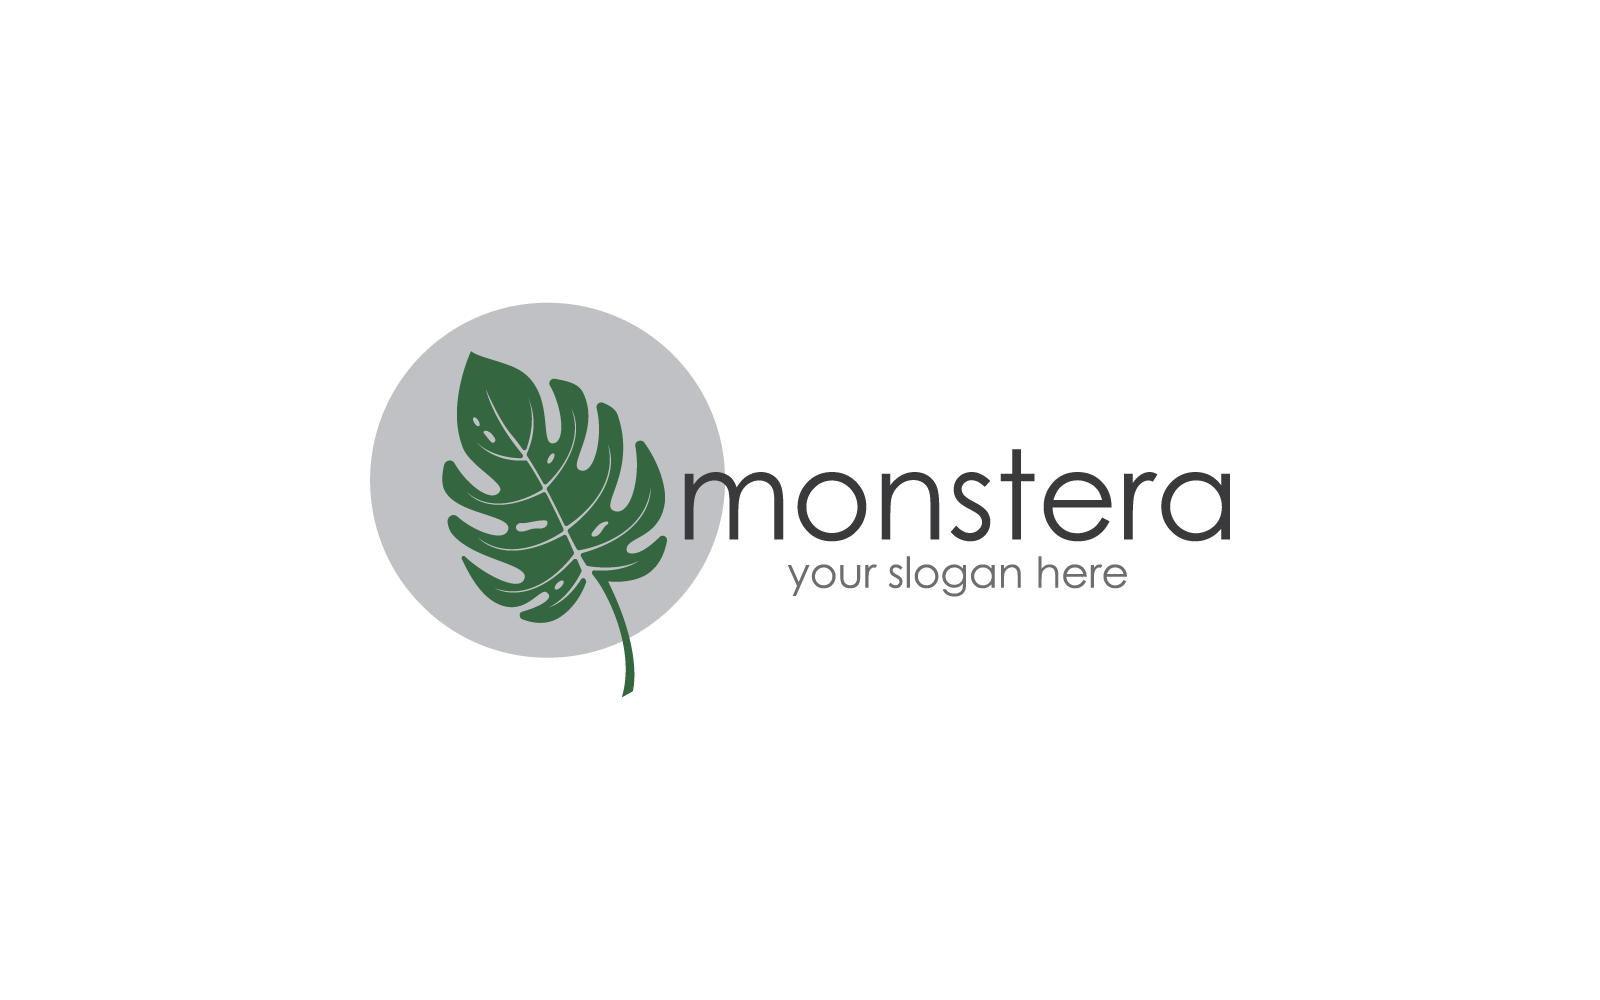 Monstera leaf logo flat design illustration template